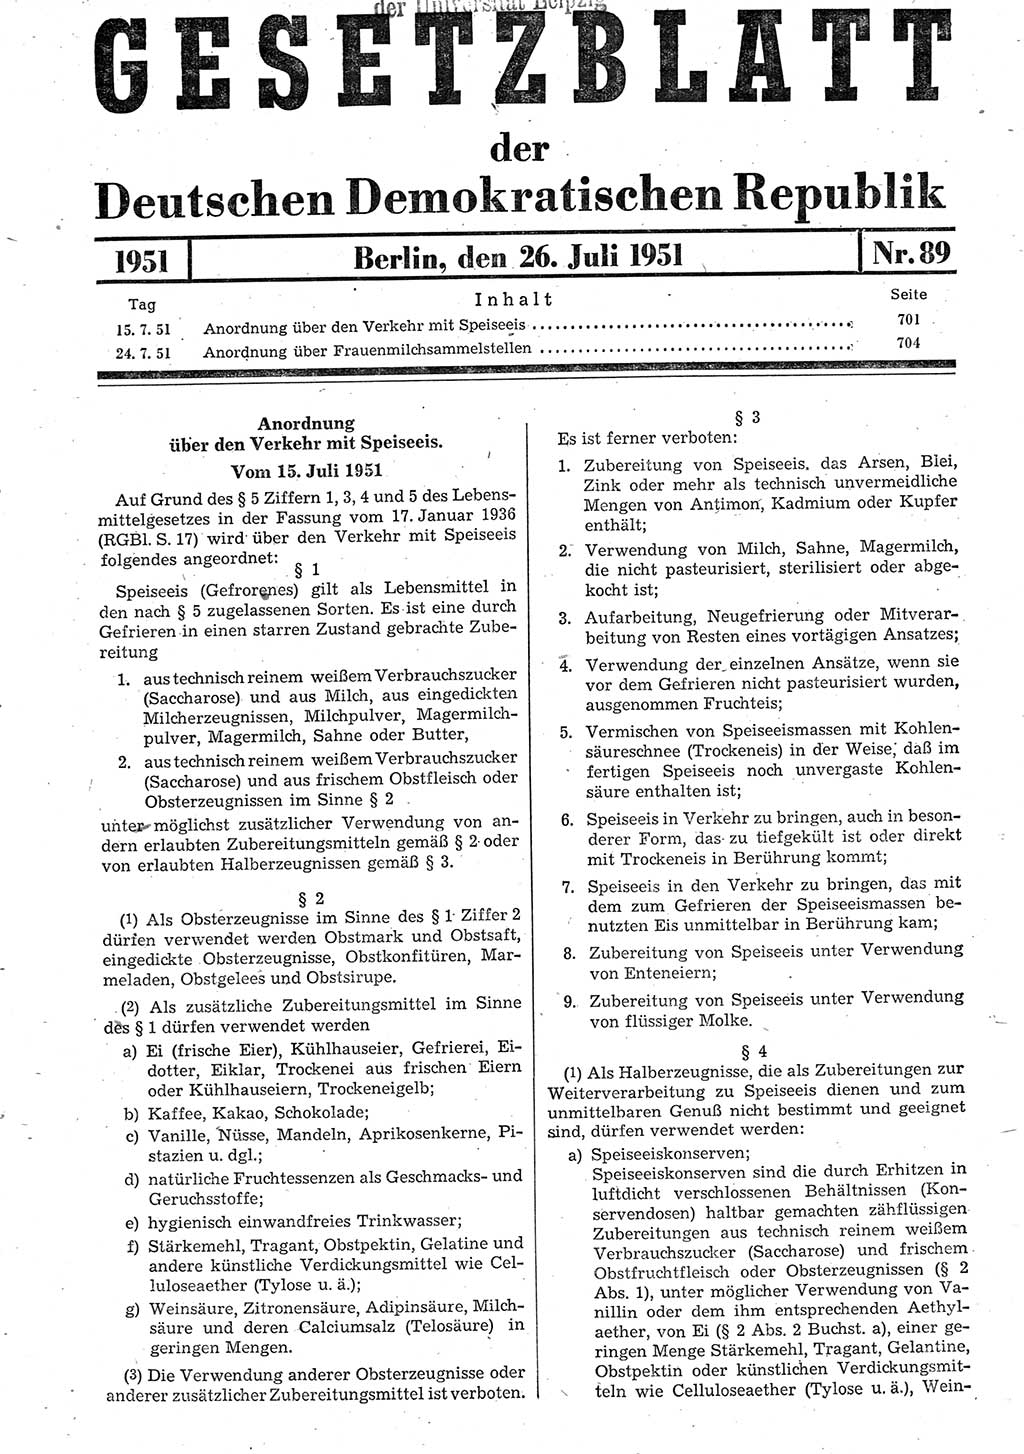 Gesetzblatt (GBl.) der Deutschen Demokratischen Republik (DDR) 1951, Seite 701 (GBl. DDR 1951, S. 701)